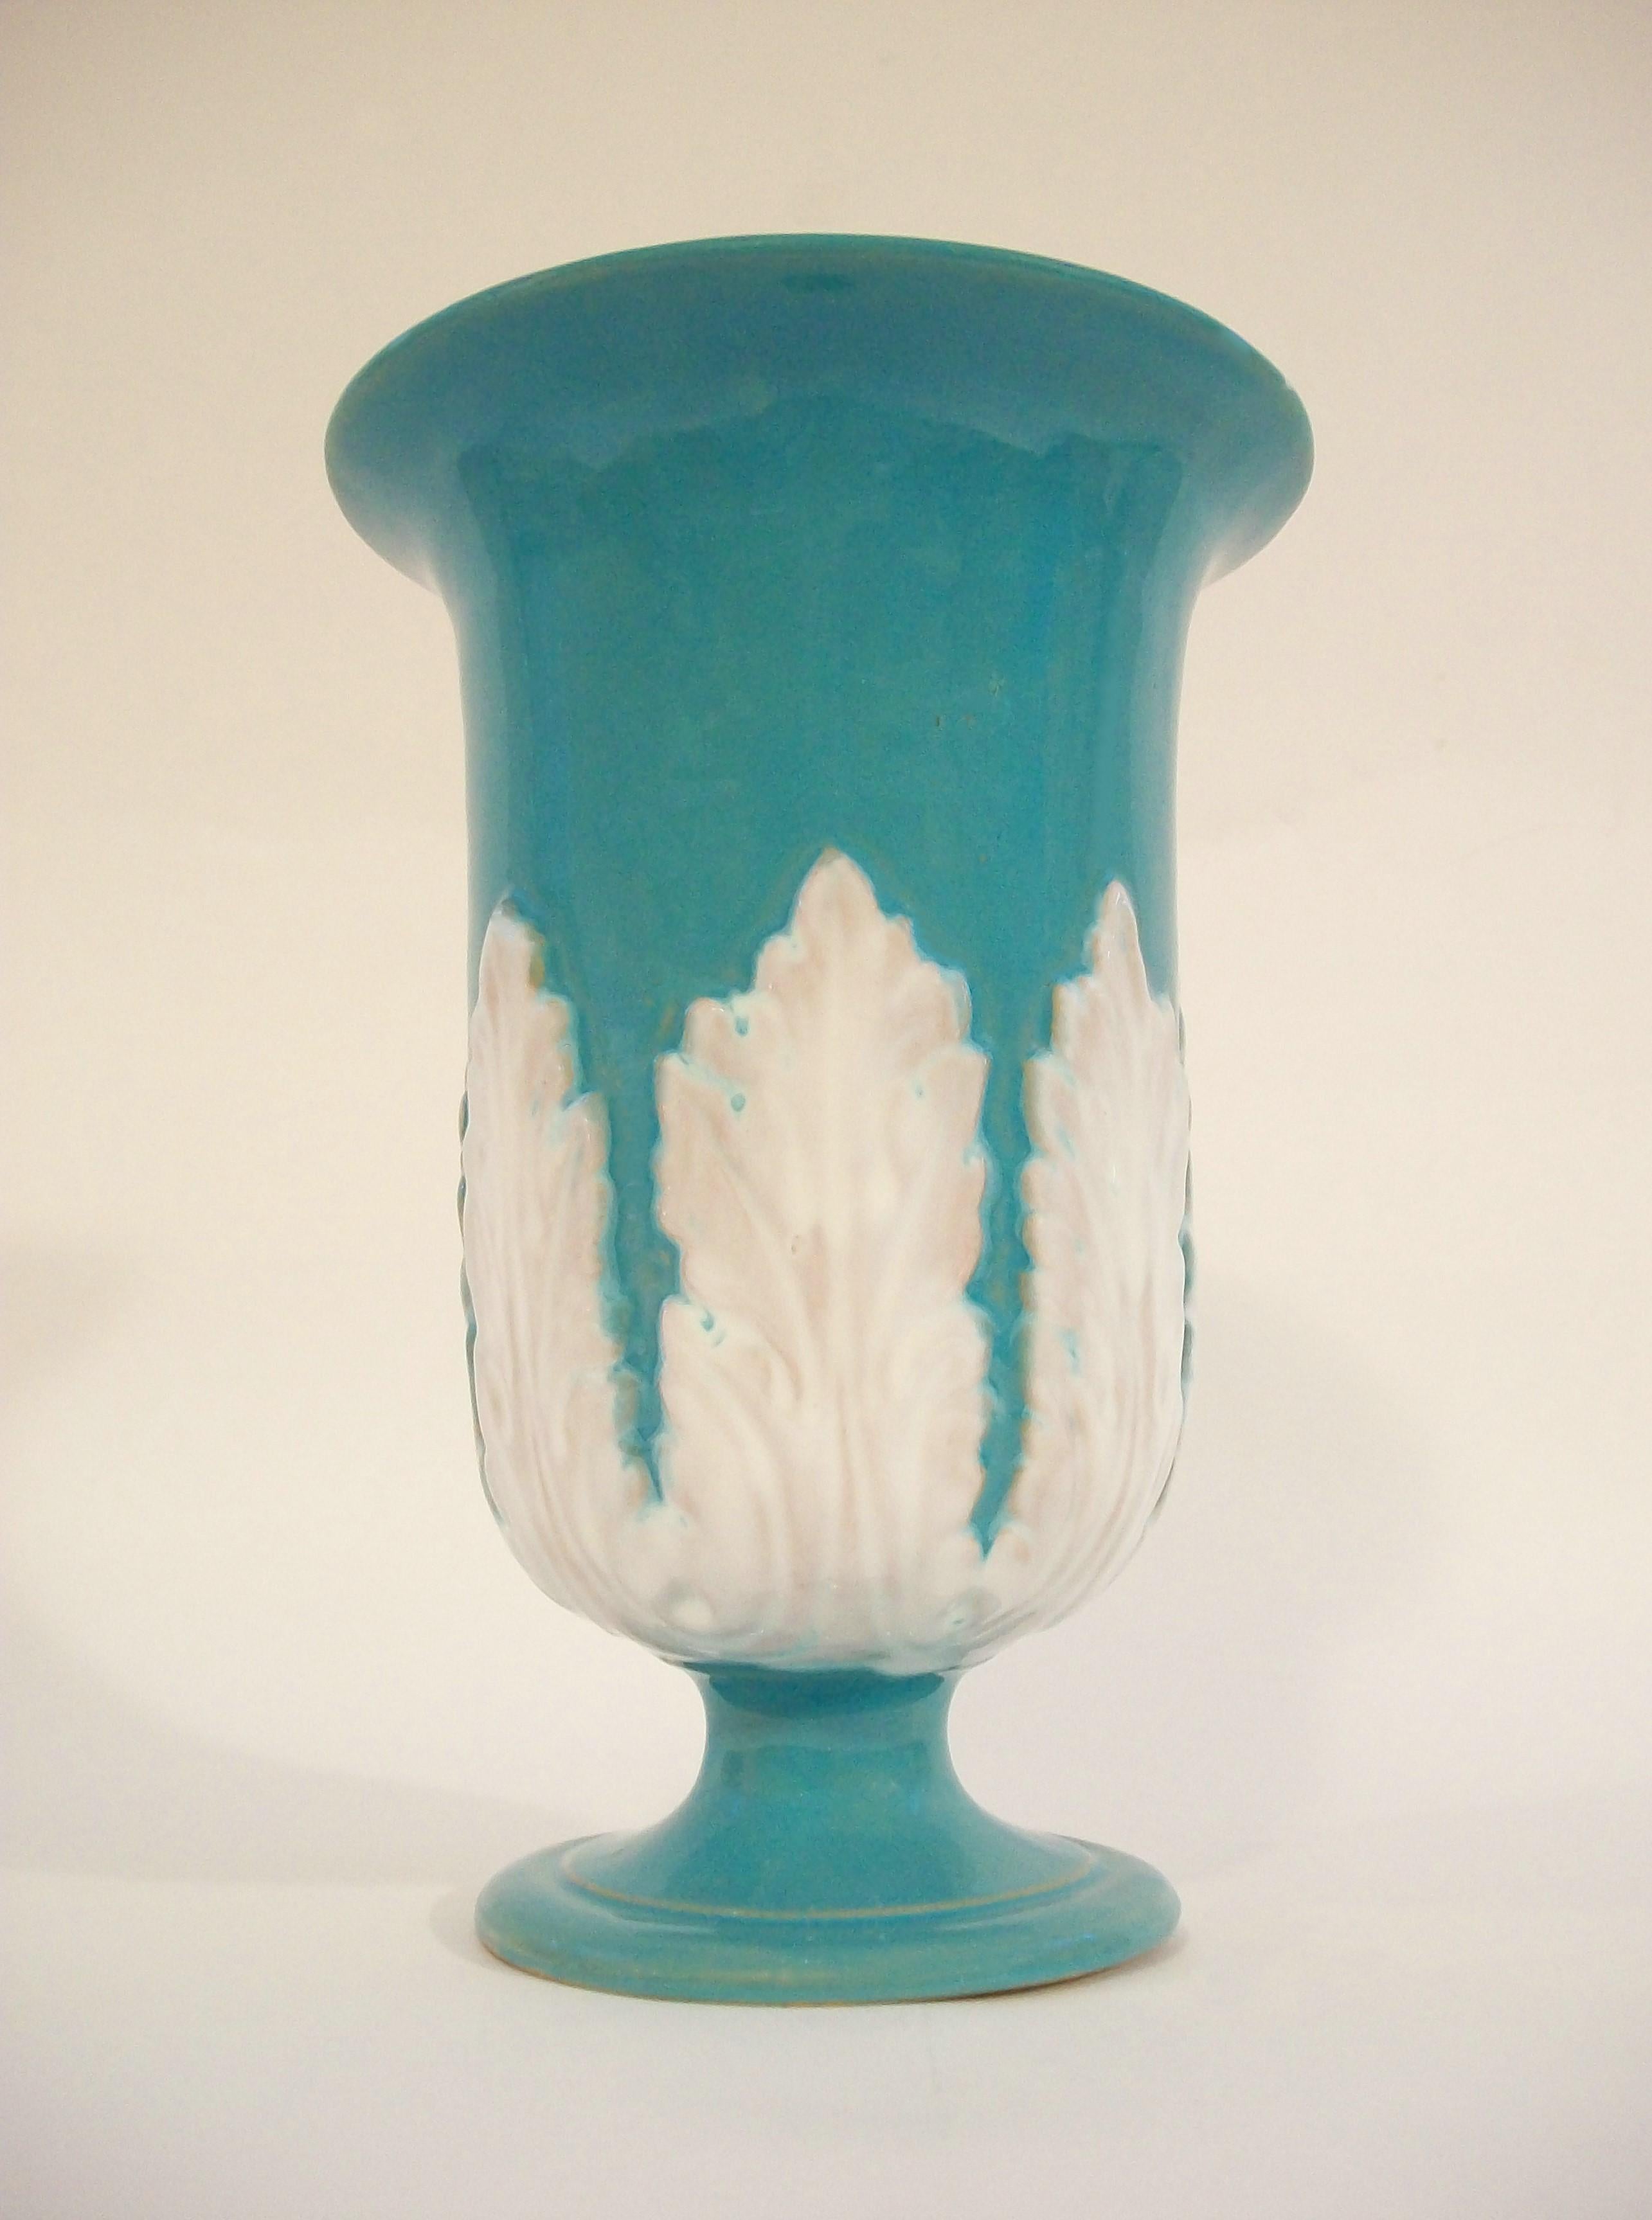 Große, türkis glasierte, trompetenförmige Hollywood-Regency-Vase aus Terrakotta - mit weiß glasierten Akanthusblättern in der Mitte - verjüngter Sockel - innen glasiert - unsigniert - Modellnummer 4021.90 und Italien auf dem Boden - um